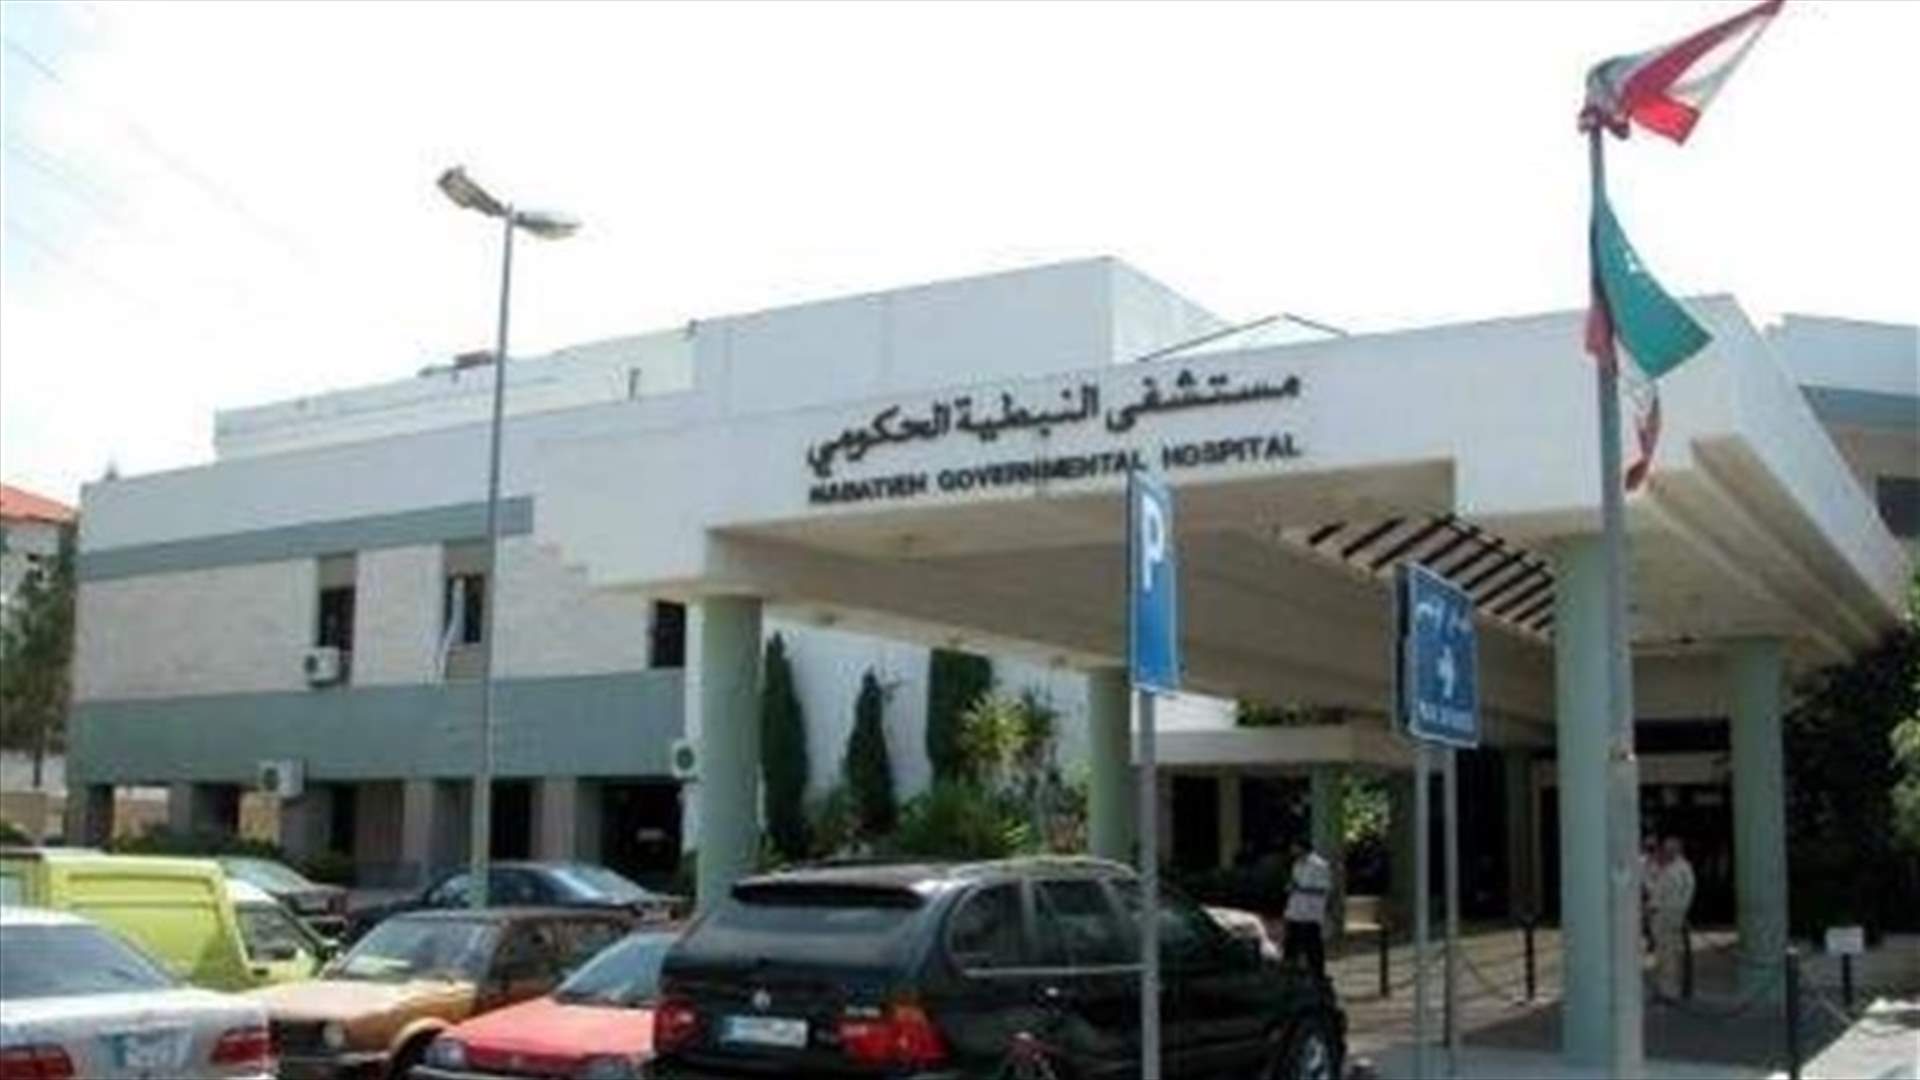 توضيح من مستشفى نبيه بري الحكومي الجامعي في النبطية بعد الخبر المتداول عن اصابتين بفيروس كورونا